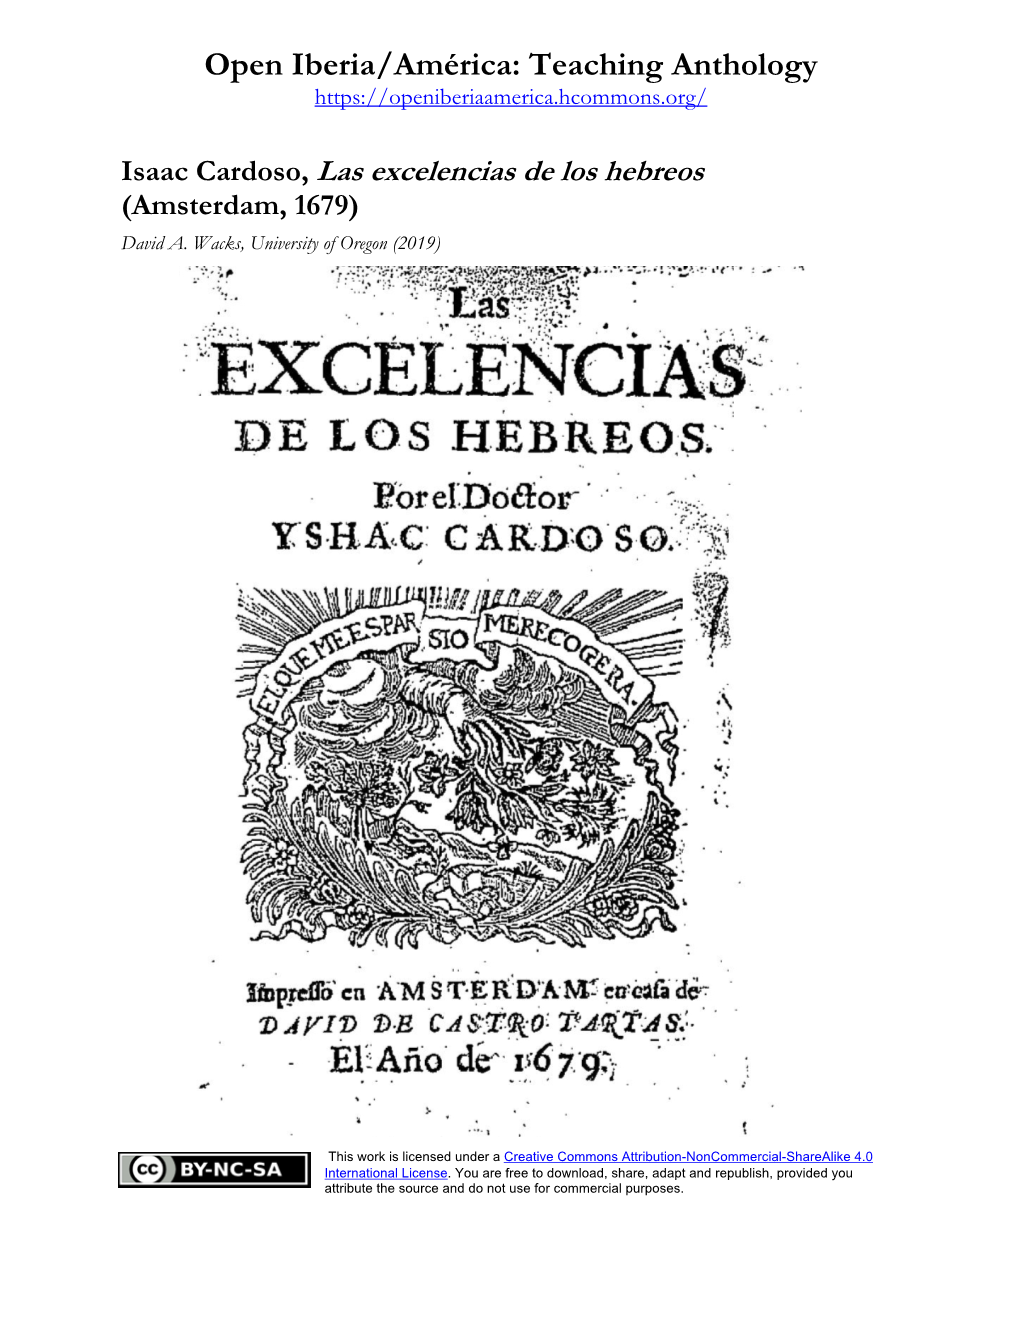 Isaac Cardoso, Las Excelencias De Los Hebreos (Amsterdam, 1679) David A